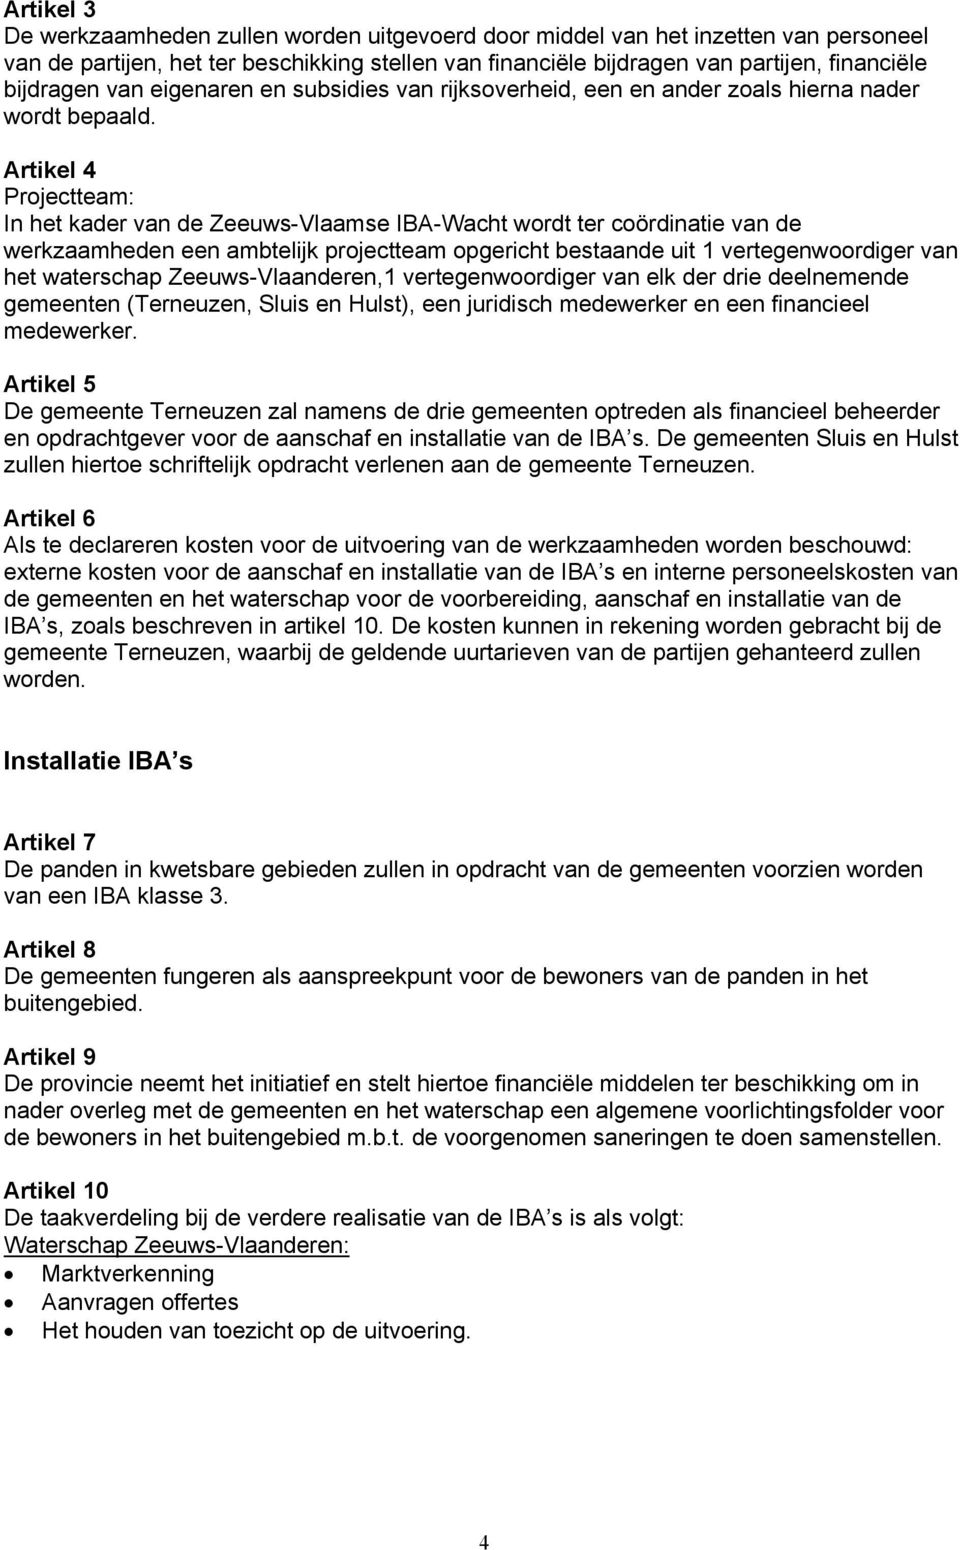 Artikel 4 Projectteam: In het kader van de Zeeuws-Vlaamse IBA-Wacht wordt ter coördinatie van de werkzaamheden een ambtelijk projectteam opgericht bestaande uit 1 vertegenwoordiger van het waterschap